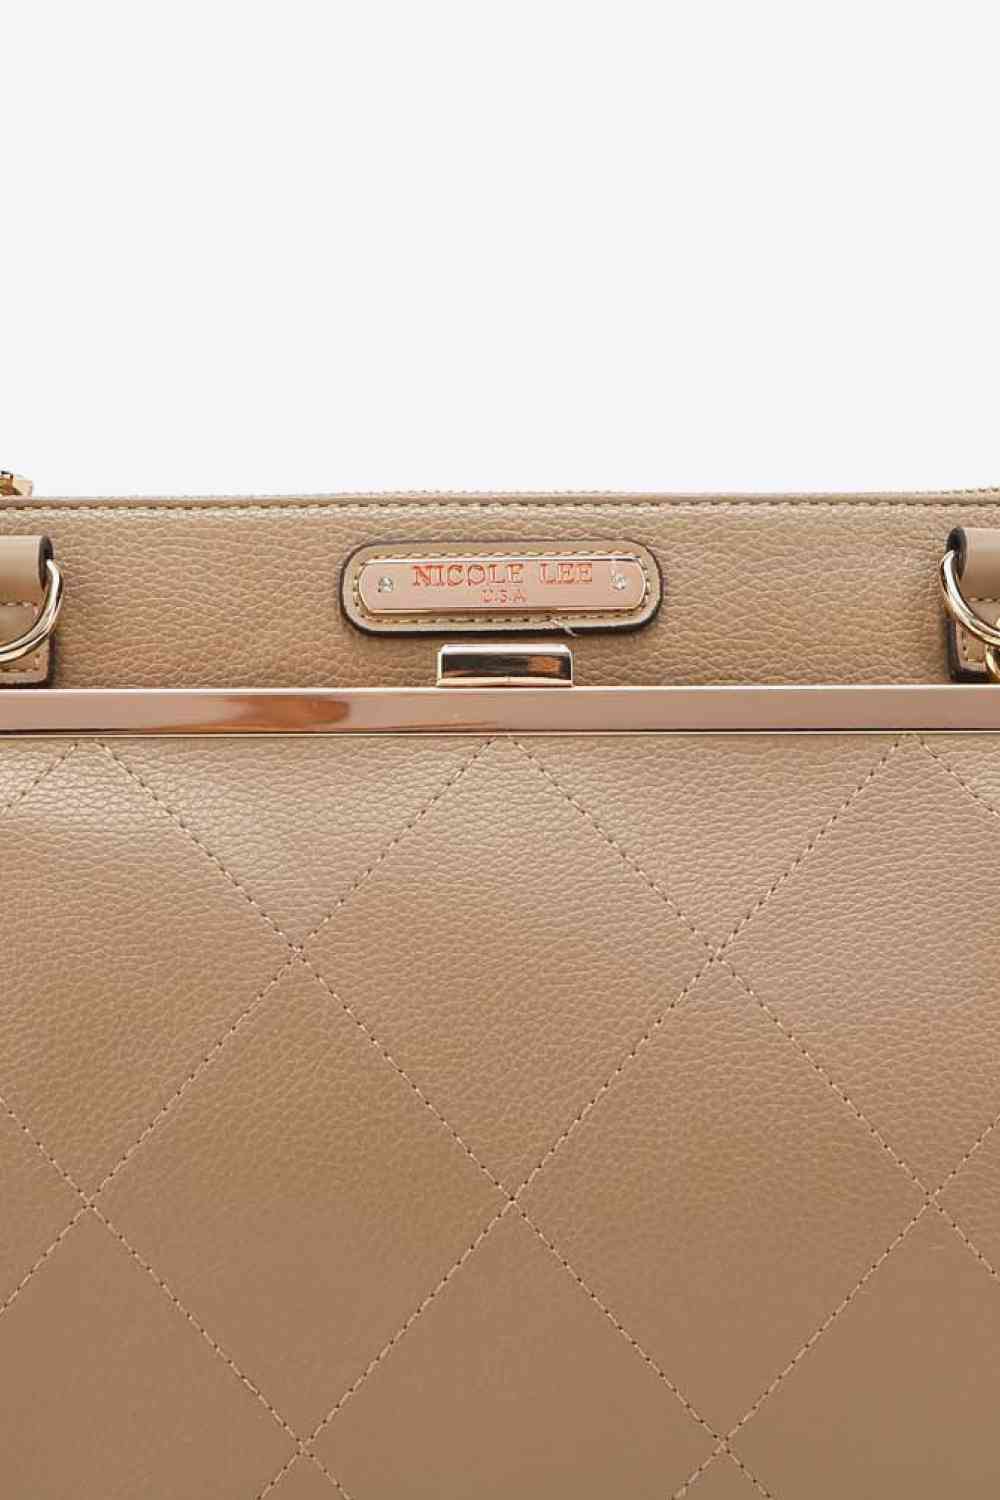 Trendsi Handbags, Wallets & Cases GYPSY-Nicole Lee USA All Day, Everyday Handbag